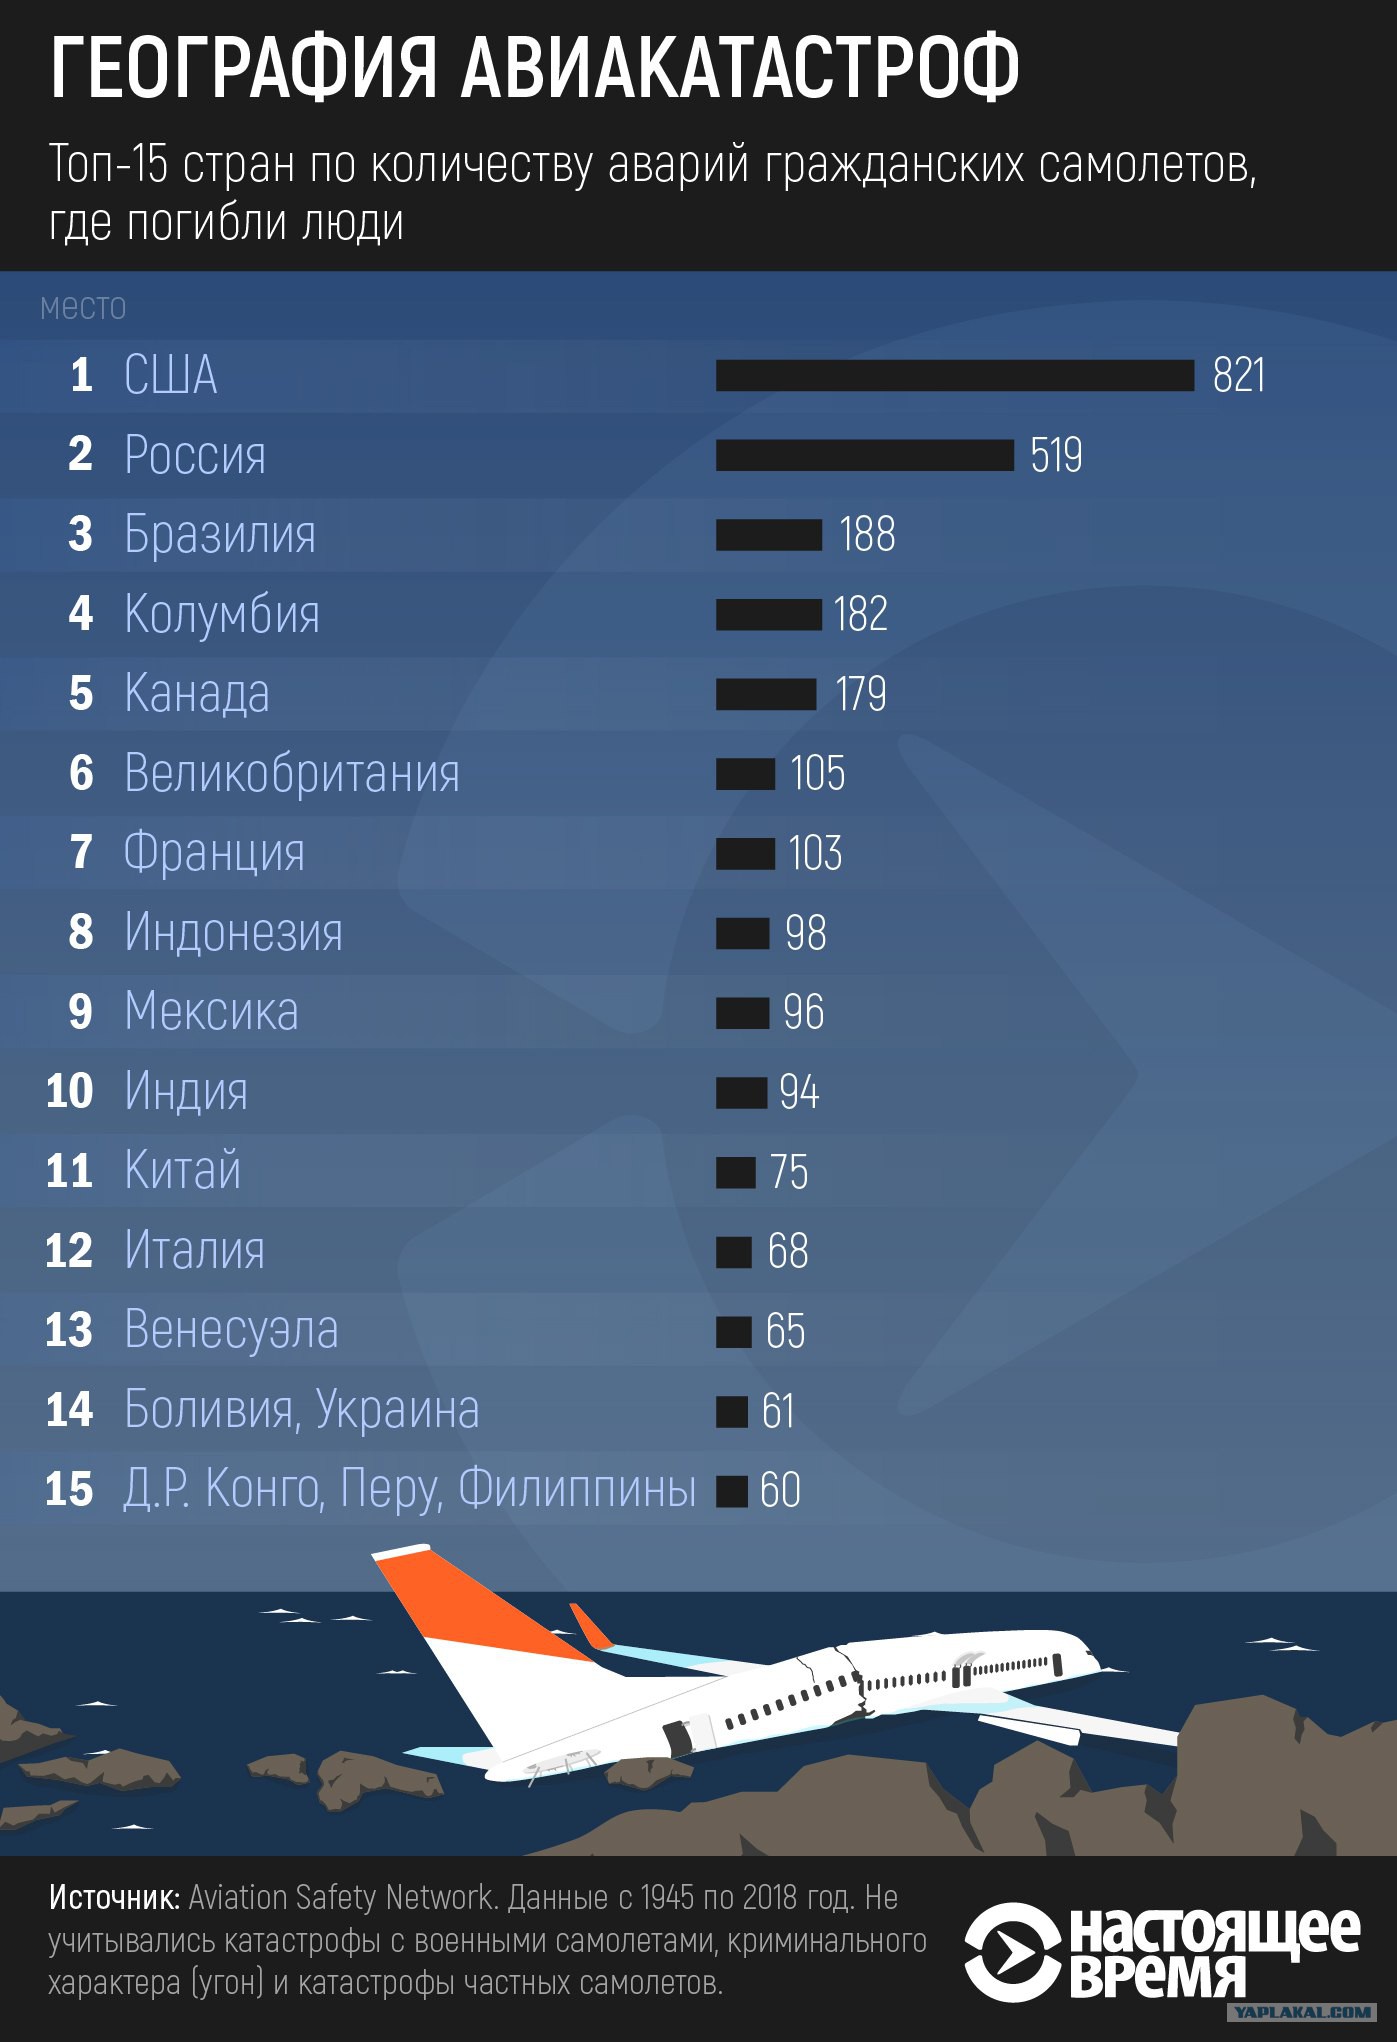 Сколько самолетов продали. Статистика падения самолетов. Количество самолетов по странам. Статистика авиакатастроф по годам. Статистика крушений самолетов.